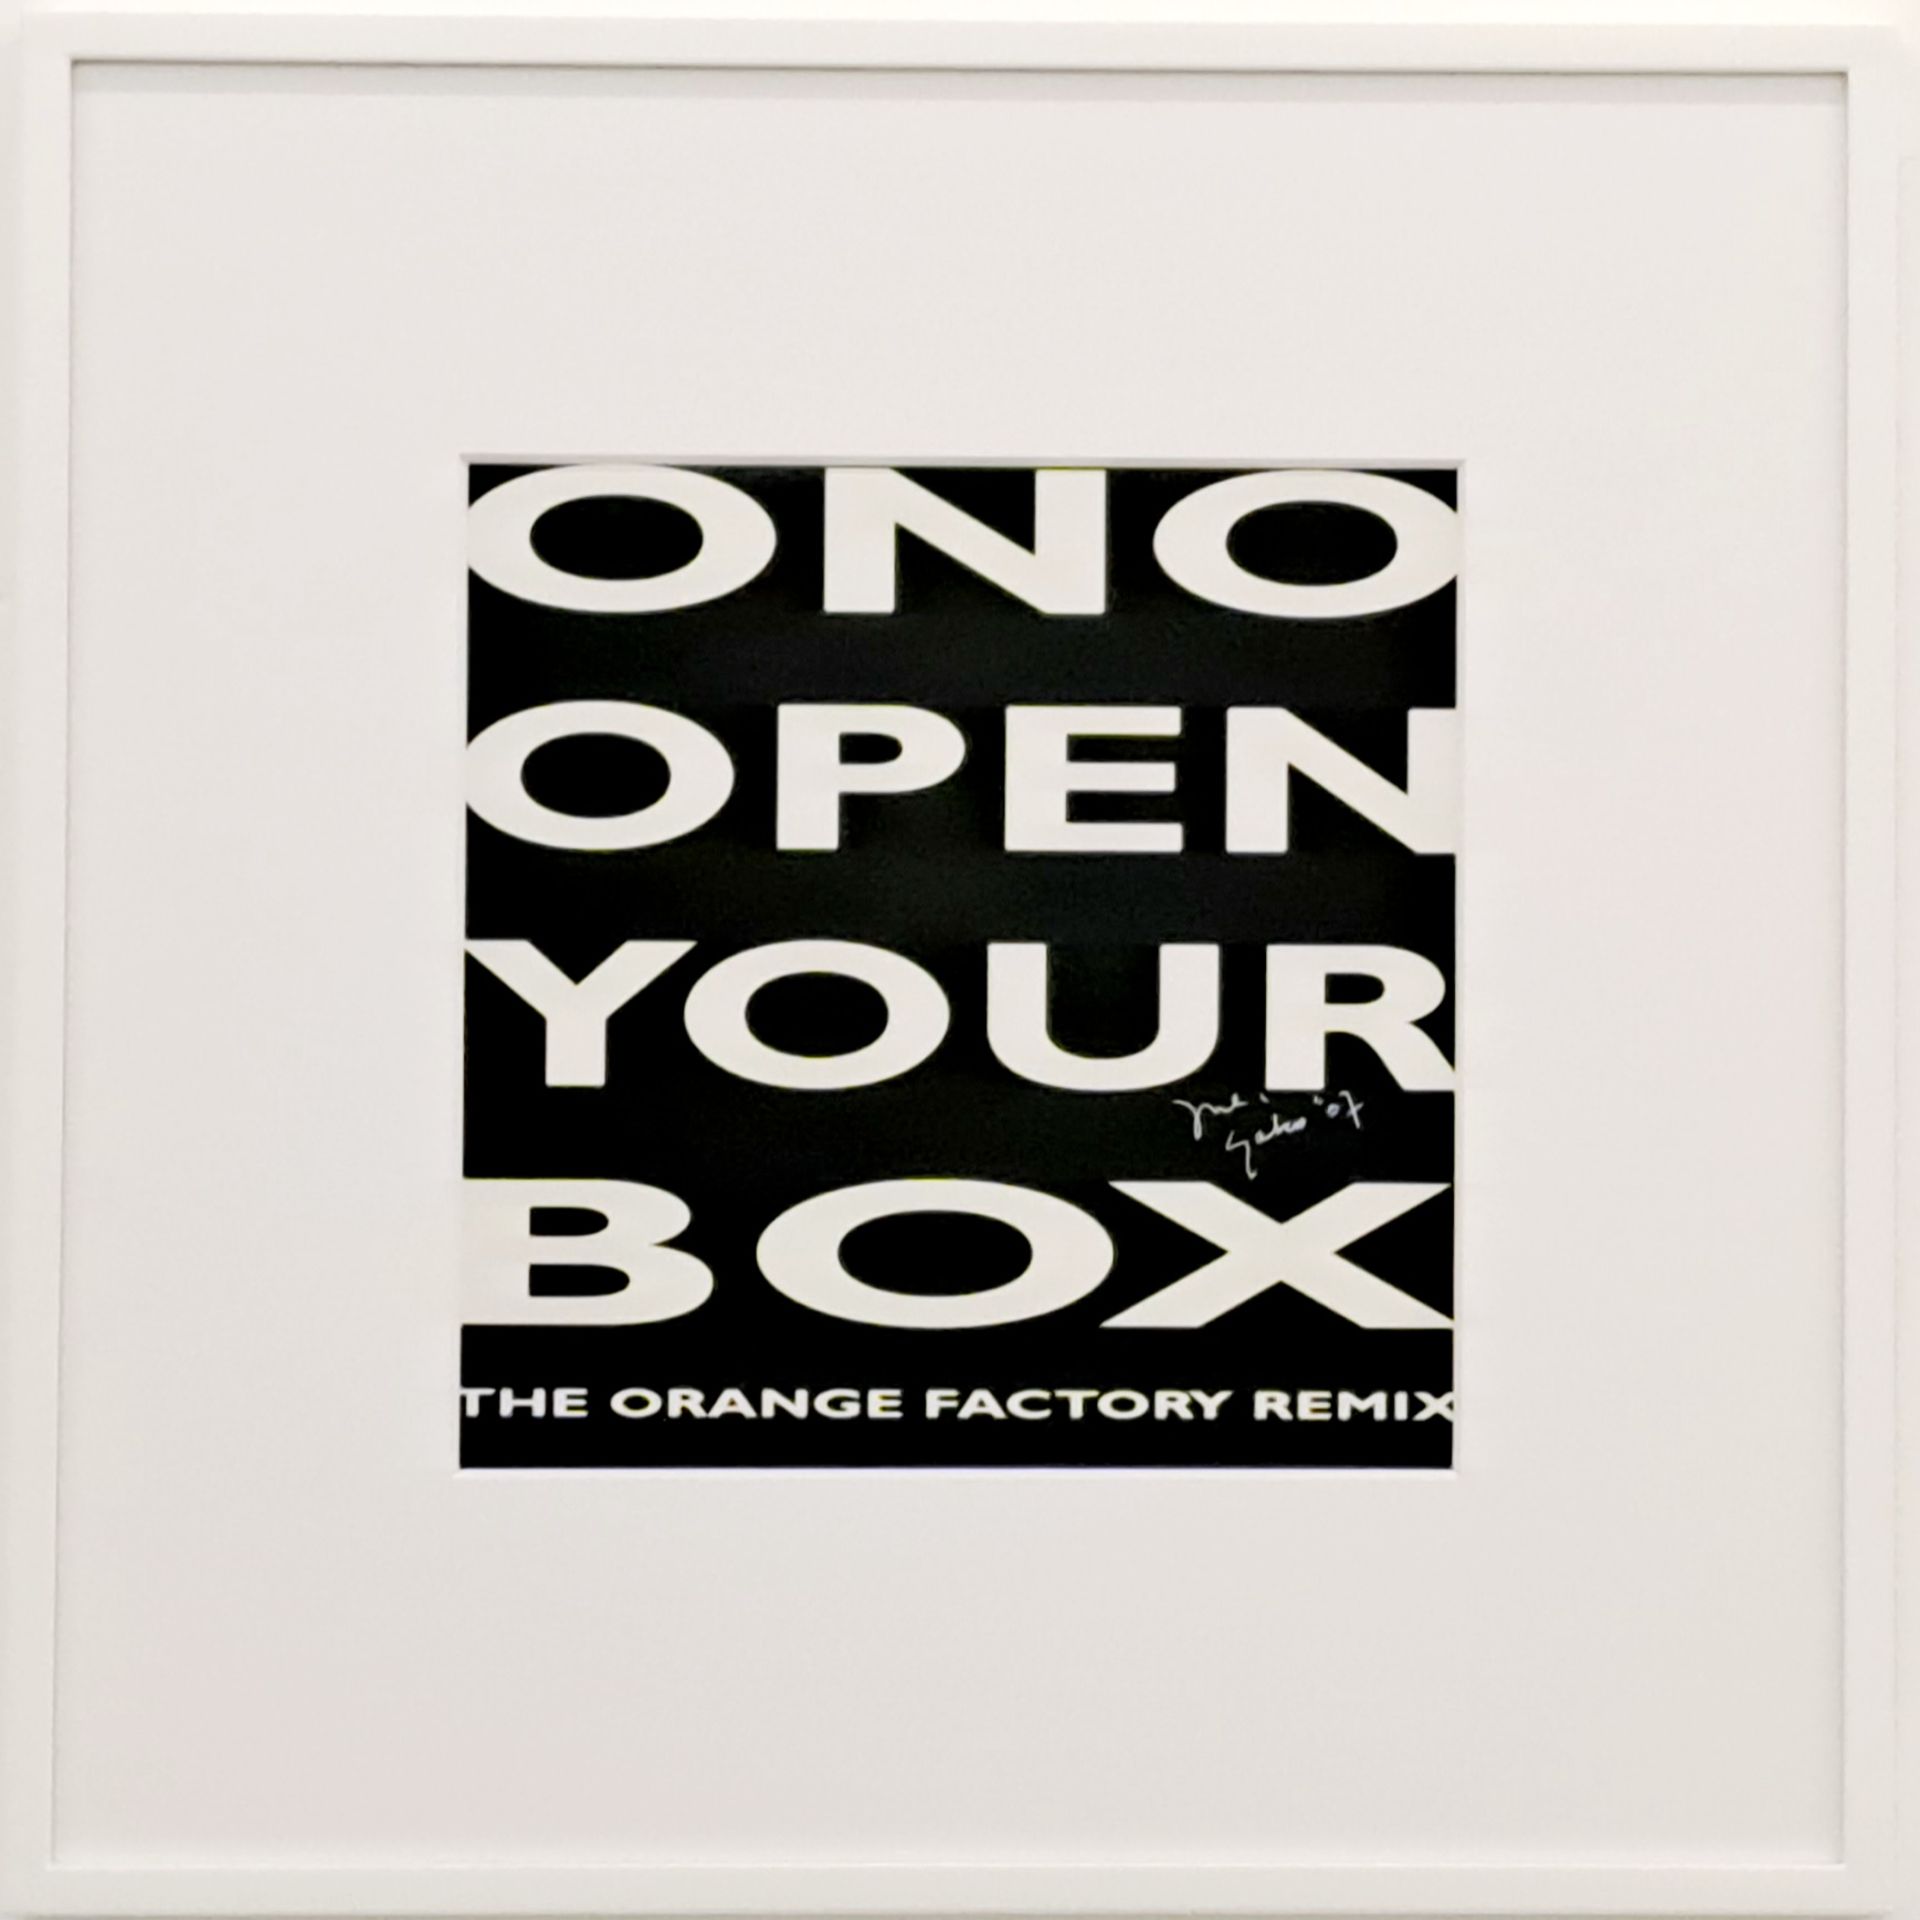 Yoko Ono - Open your box